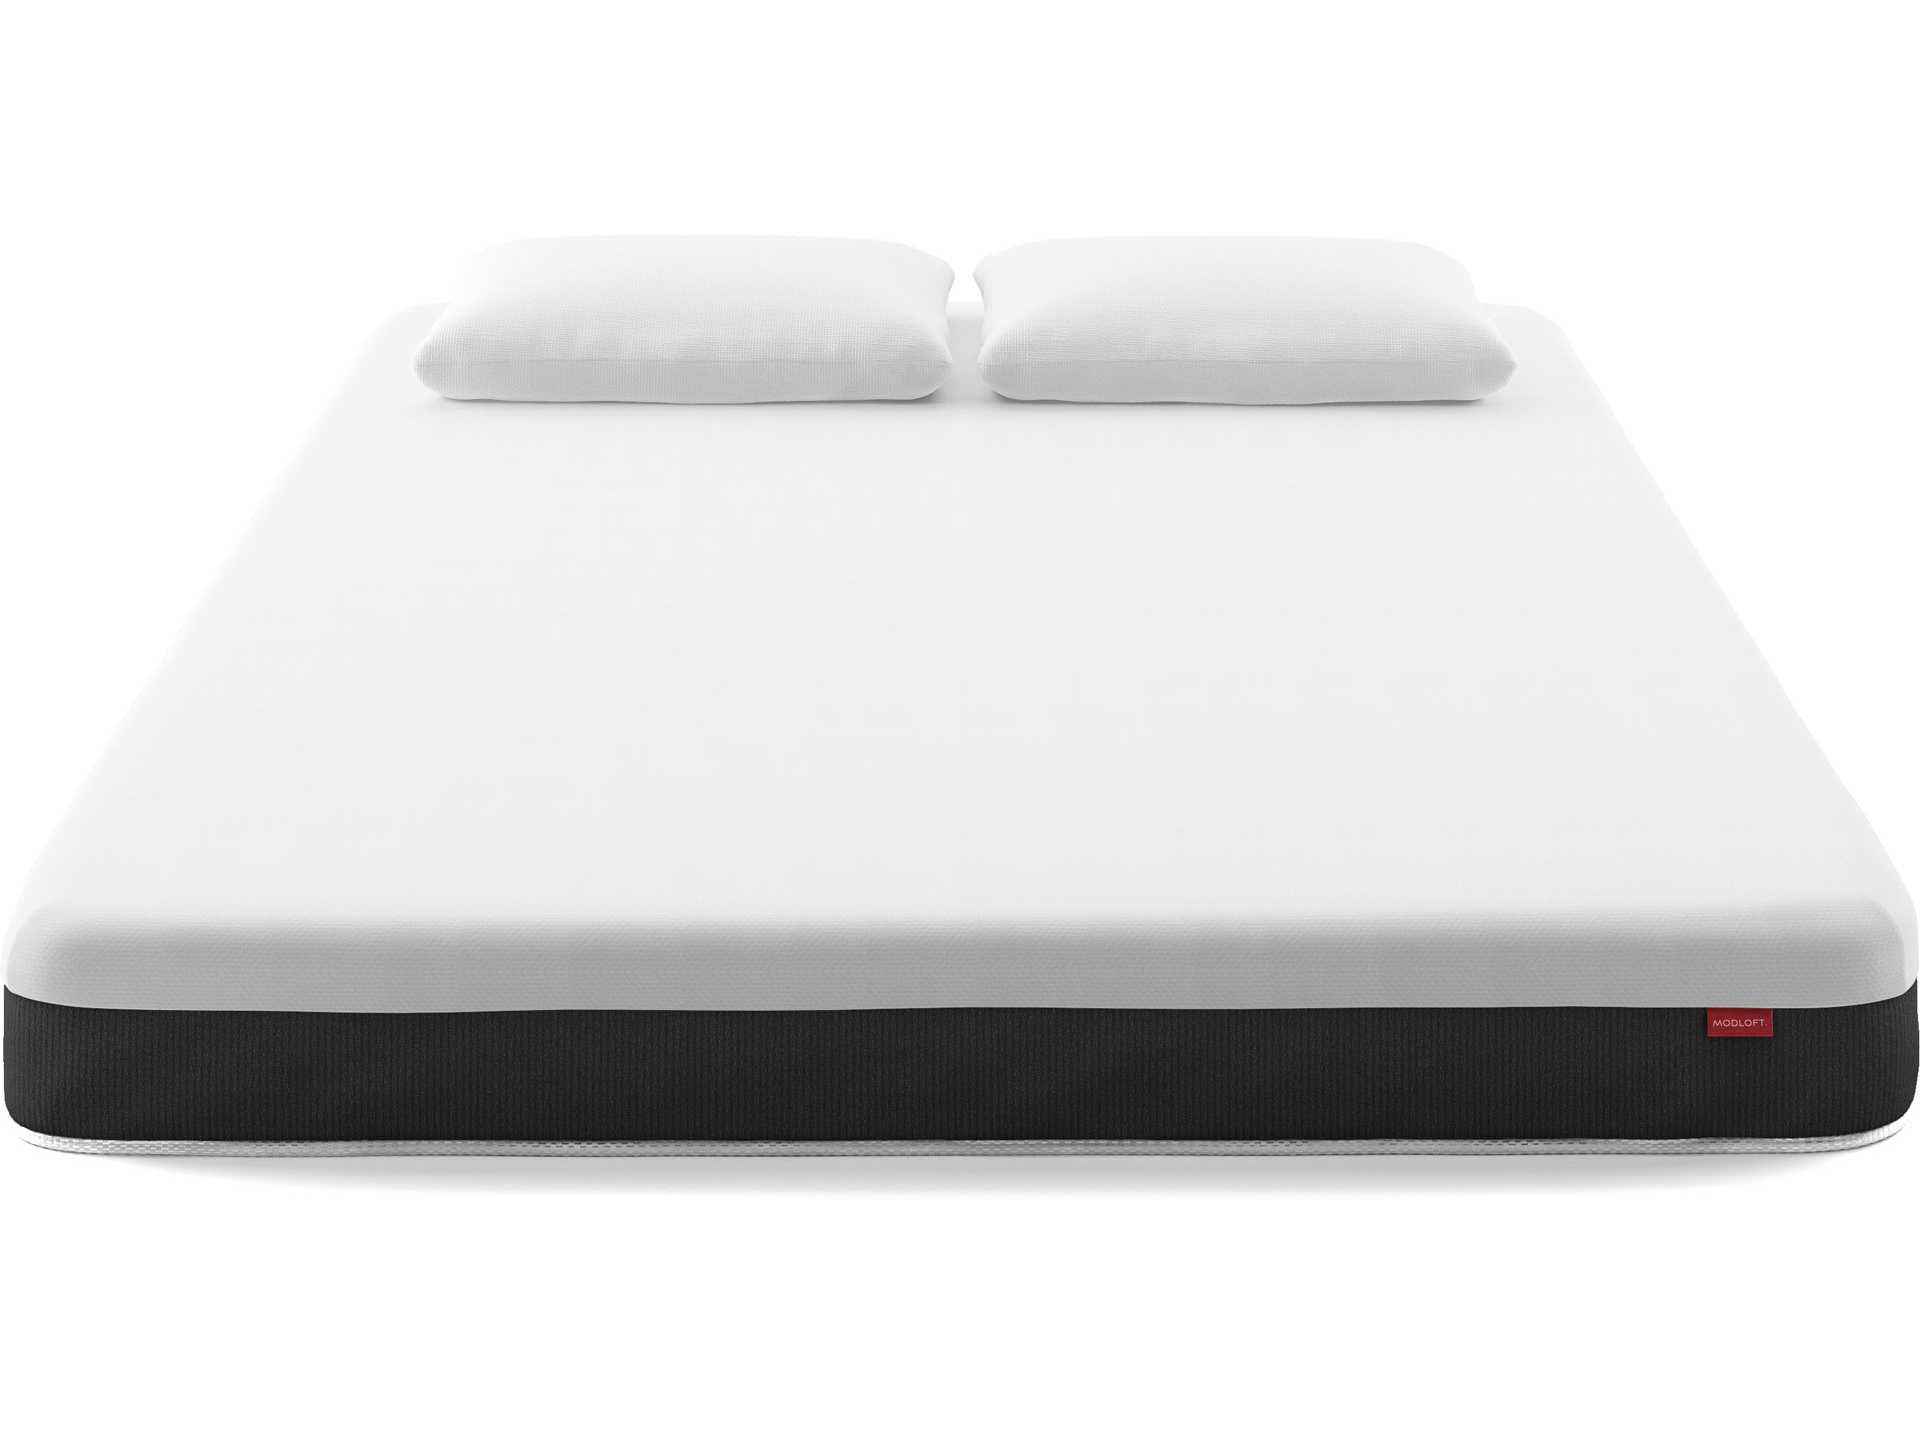 twin xl foam mattress